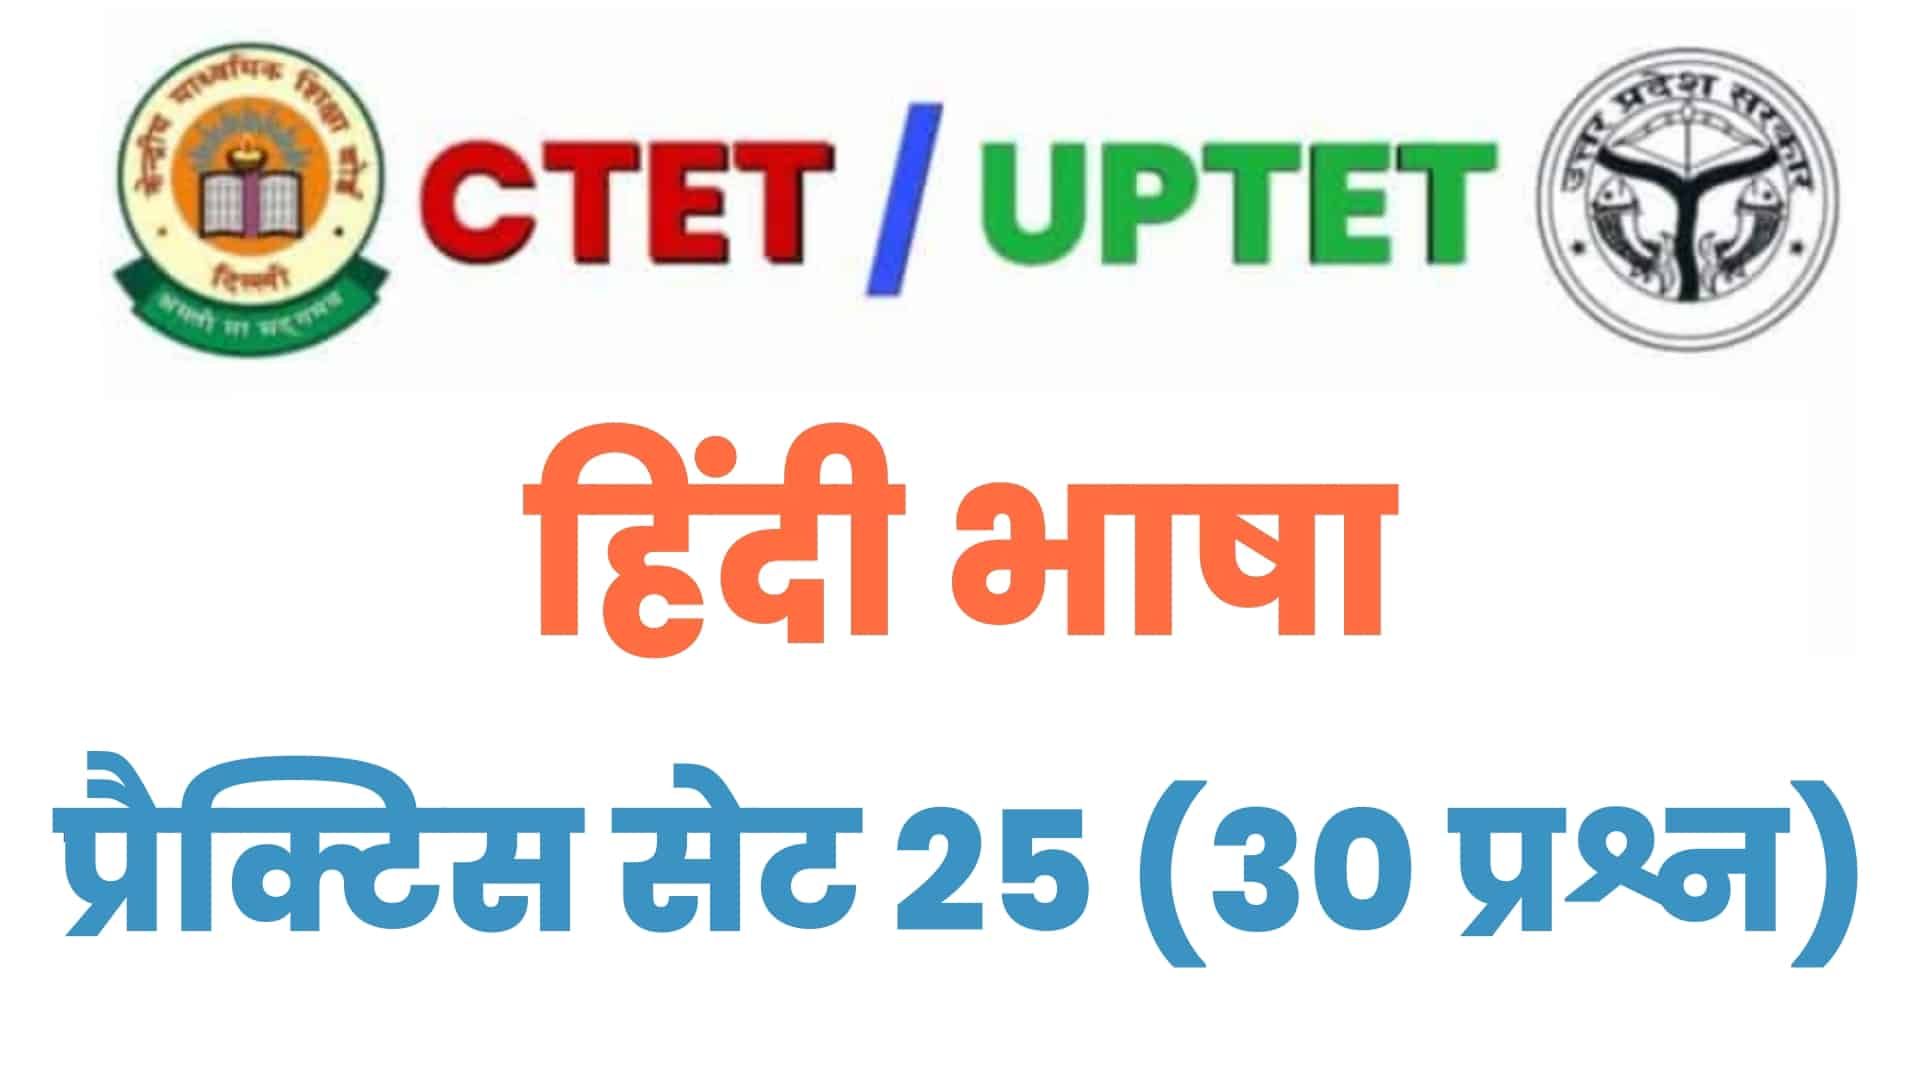 UPTET/CTET हिंदी भाषा प्रैक्टिस सेट 25 : बचे दिनों में हिंदी भाषा के इन 30 महत्वपूर्ण प्रश्नों को जरूर पढ़ लें